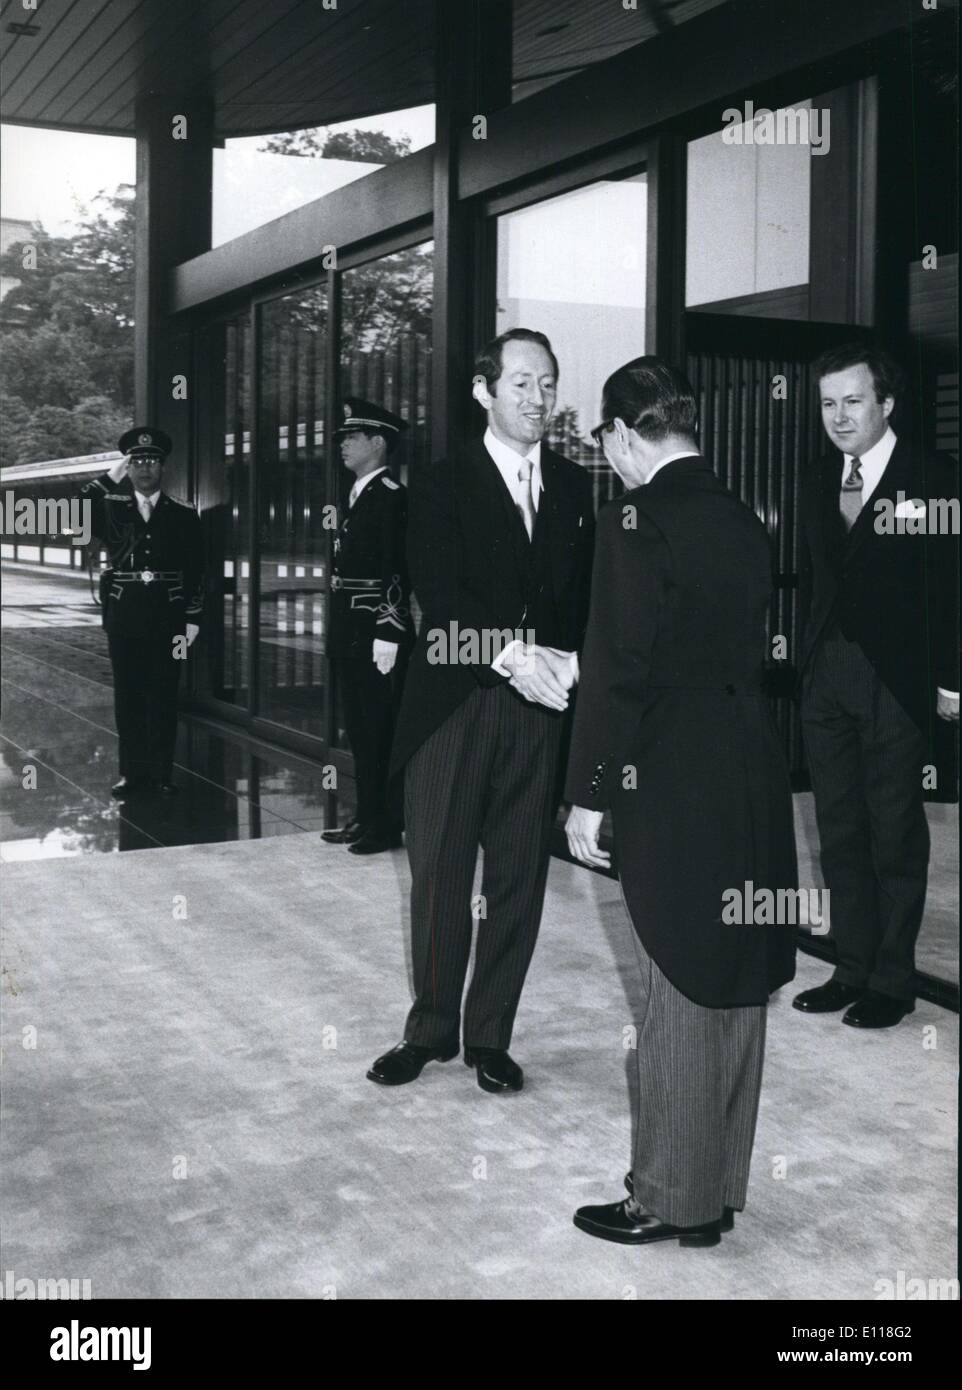 Avril 16, 1976 - L'Ambassadeur irlandais pour le Japon répond à l'Empereur : le nouvel ambassadeur d'Irlande au Japon, David Neligan, est accueilli par un fonctionnaire de l'Imperial Palace, Tokyo à son arrivée à présenter ses lettres de créance à l'empereur. Banque D'Images